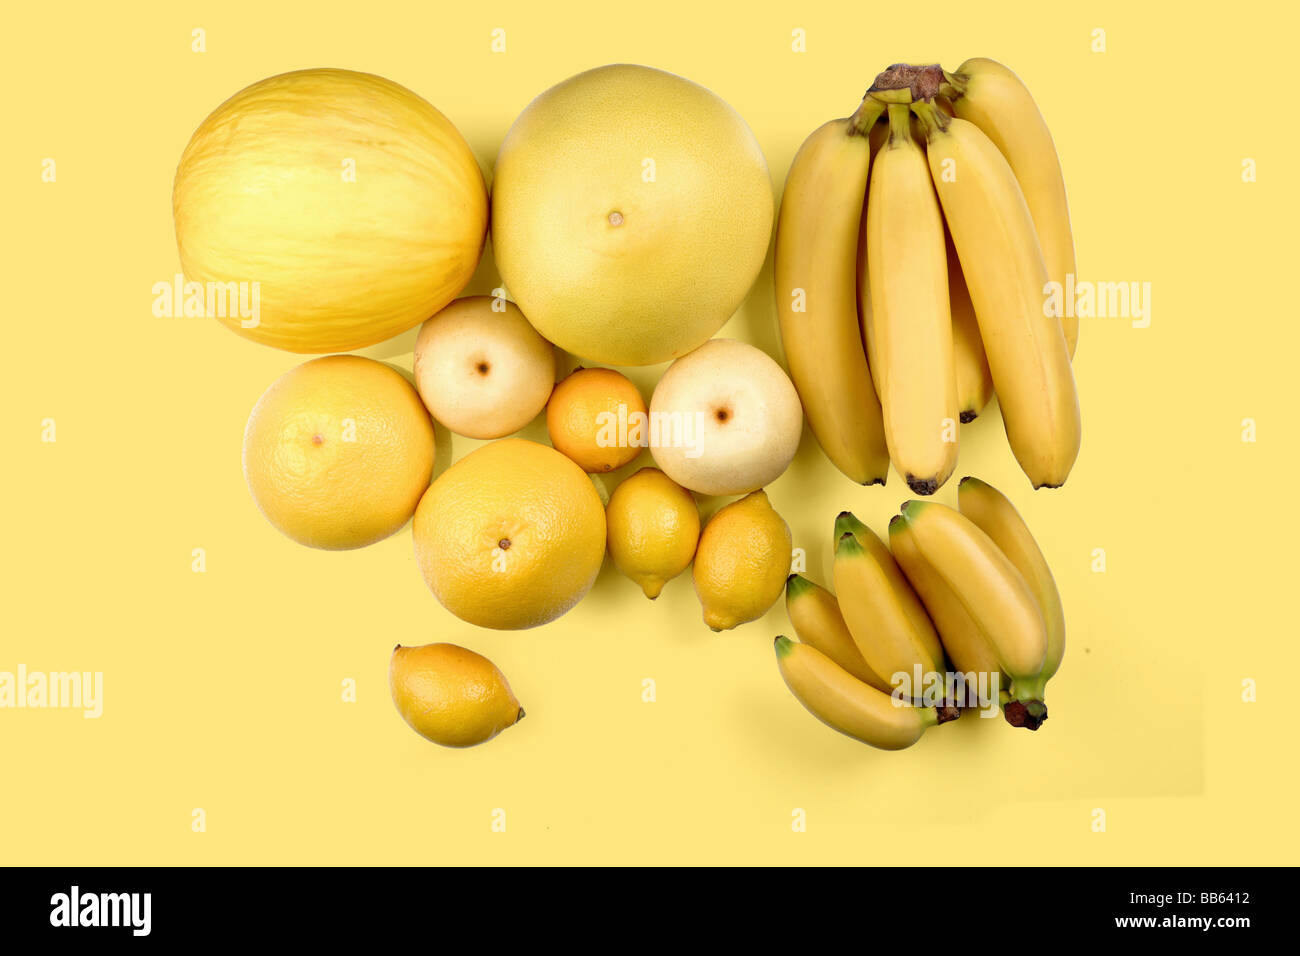 Composizione del giallo agrumi su sfondo giallo Foto Stock